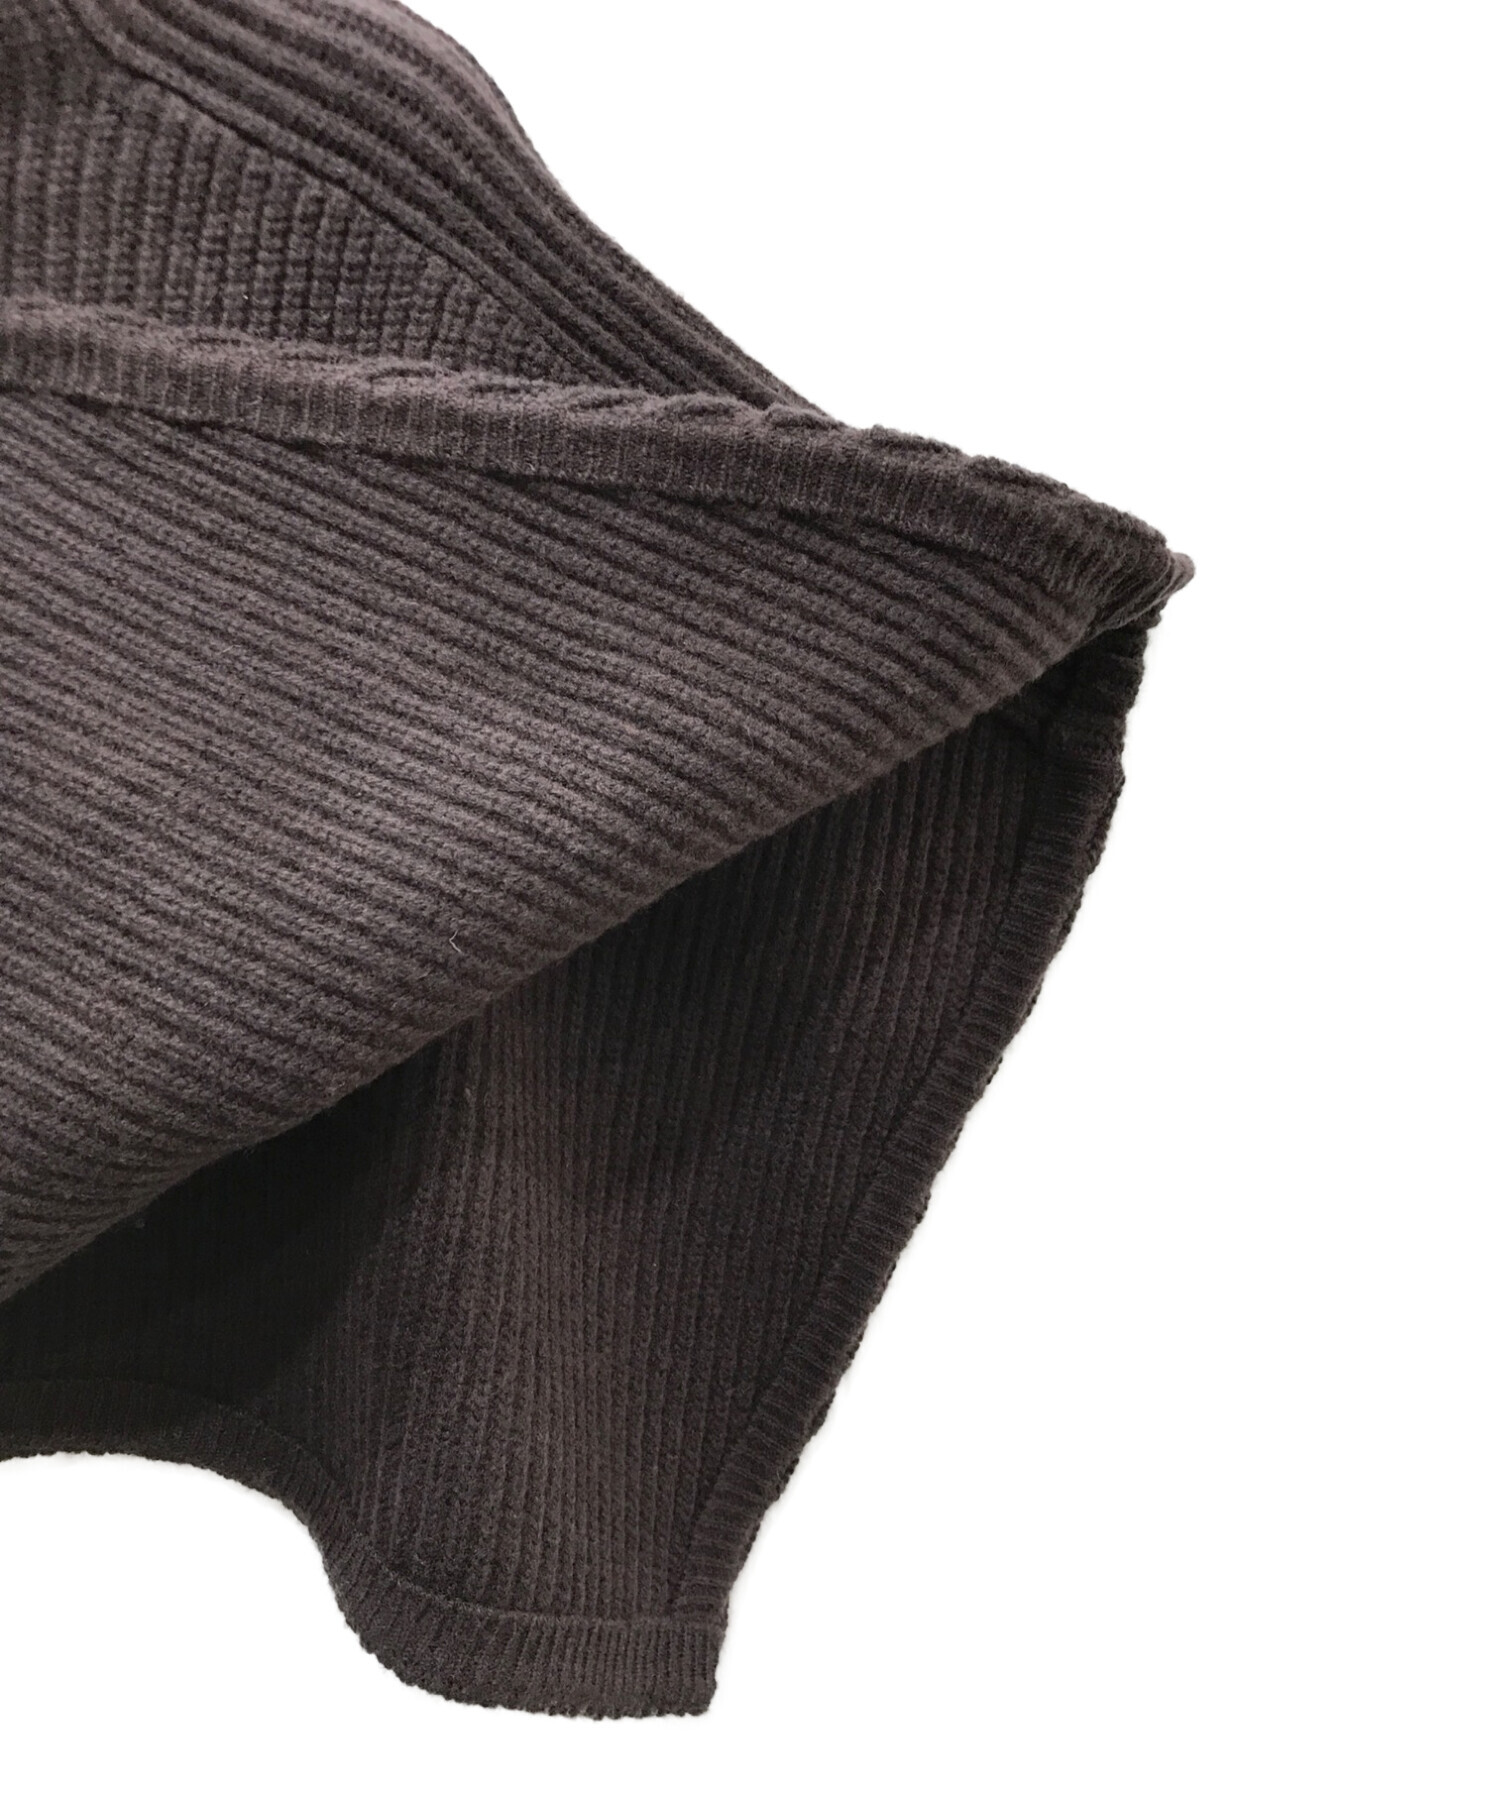 安心の日本製 RIM.ARK(リムアーク) Deformation knit tops - トップス